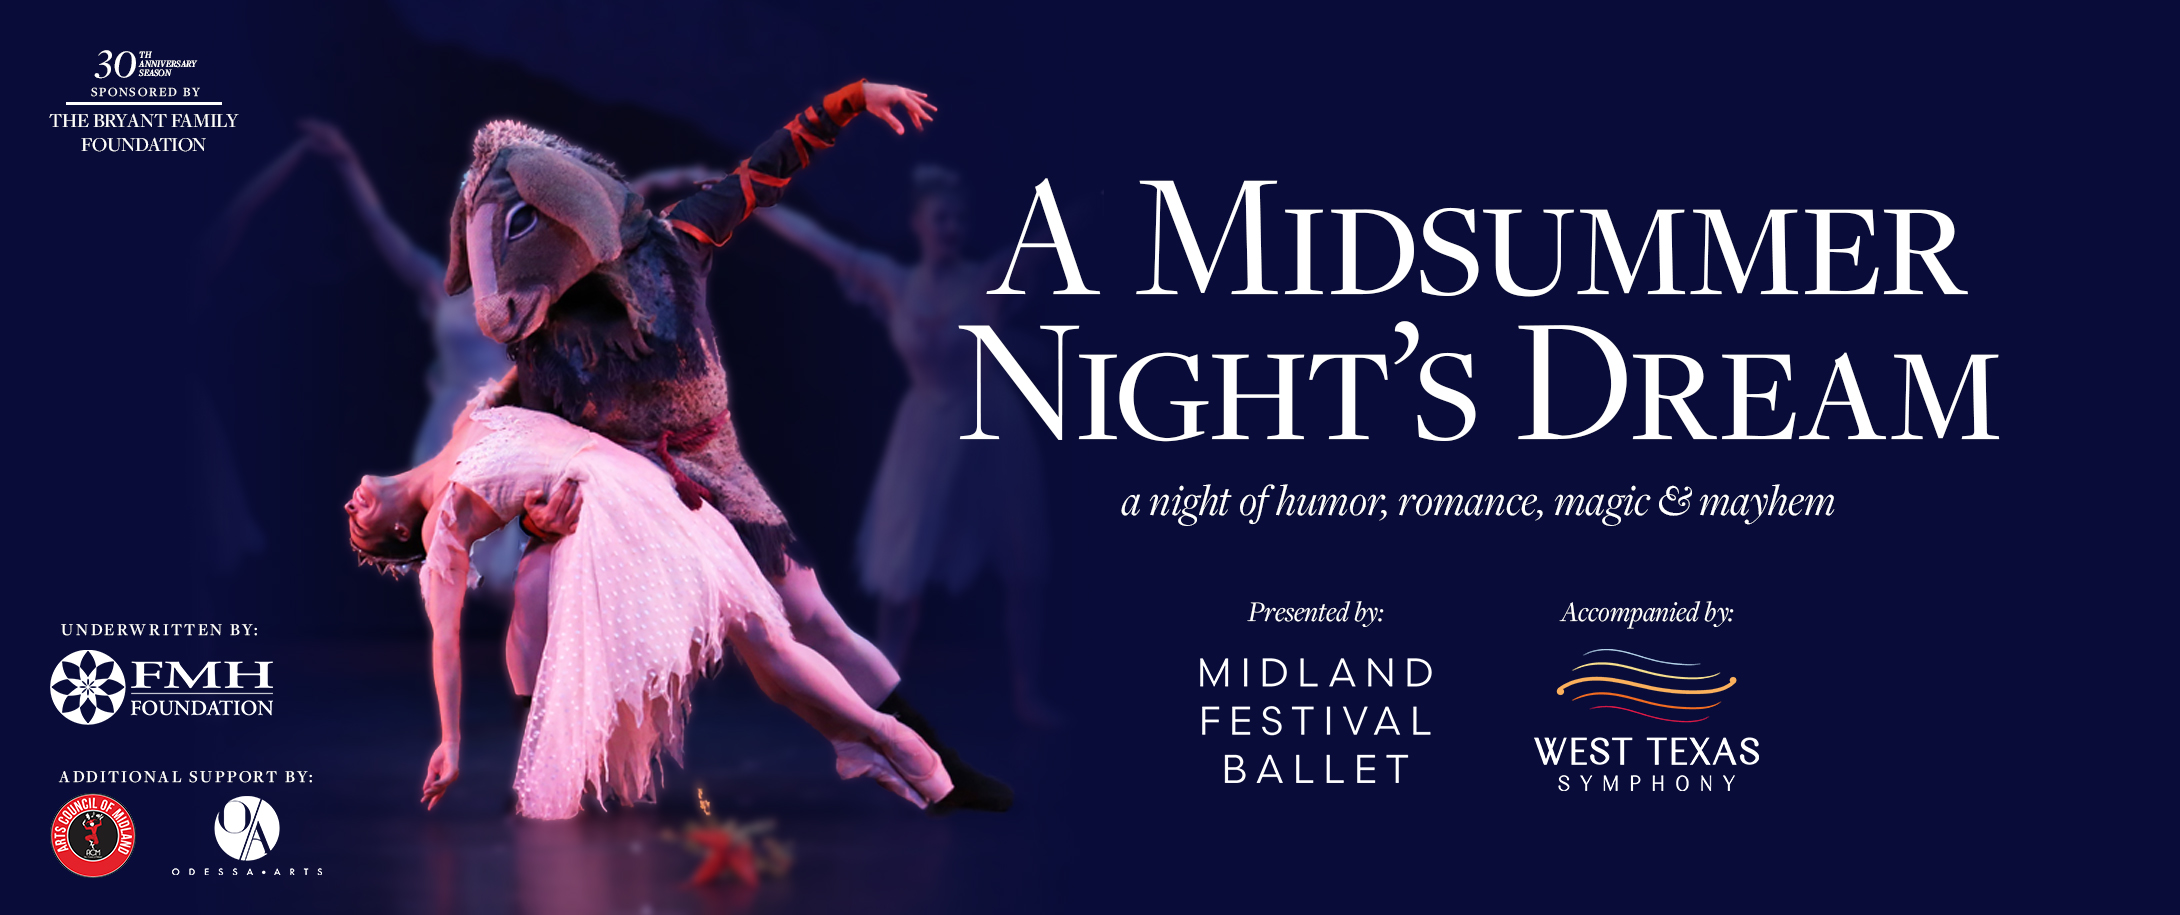 Midland Festival Ballet Presents Midsummer Night's Dream